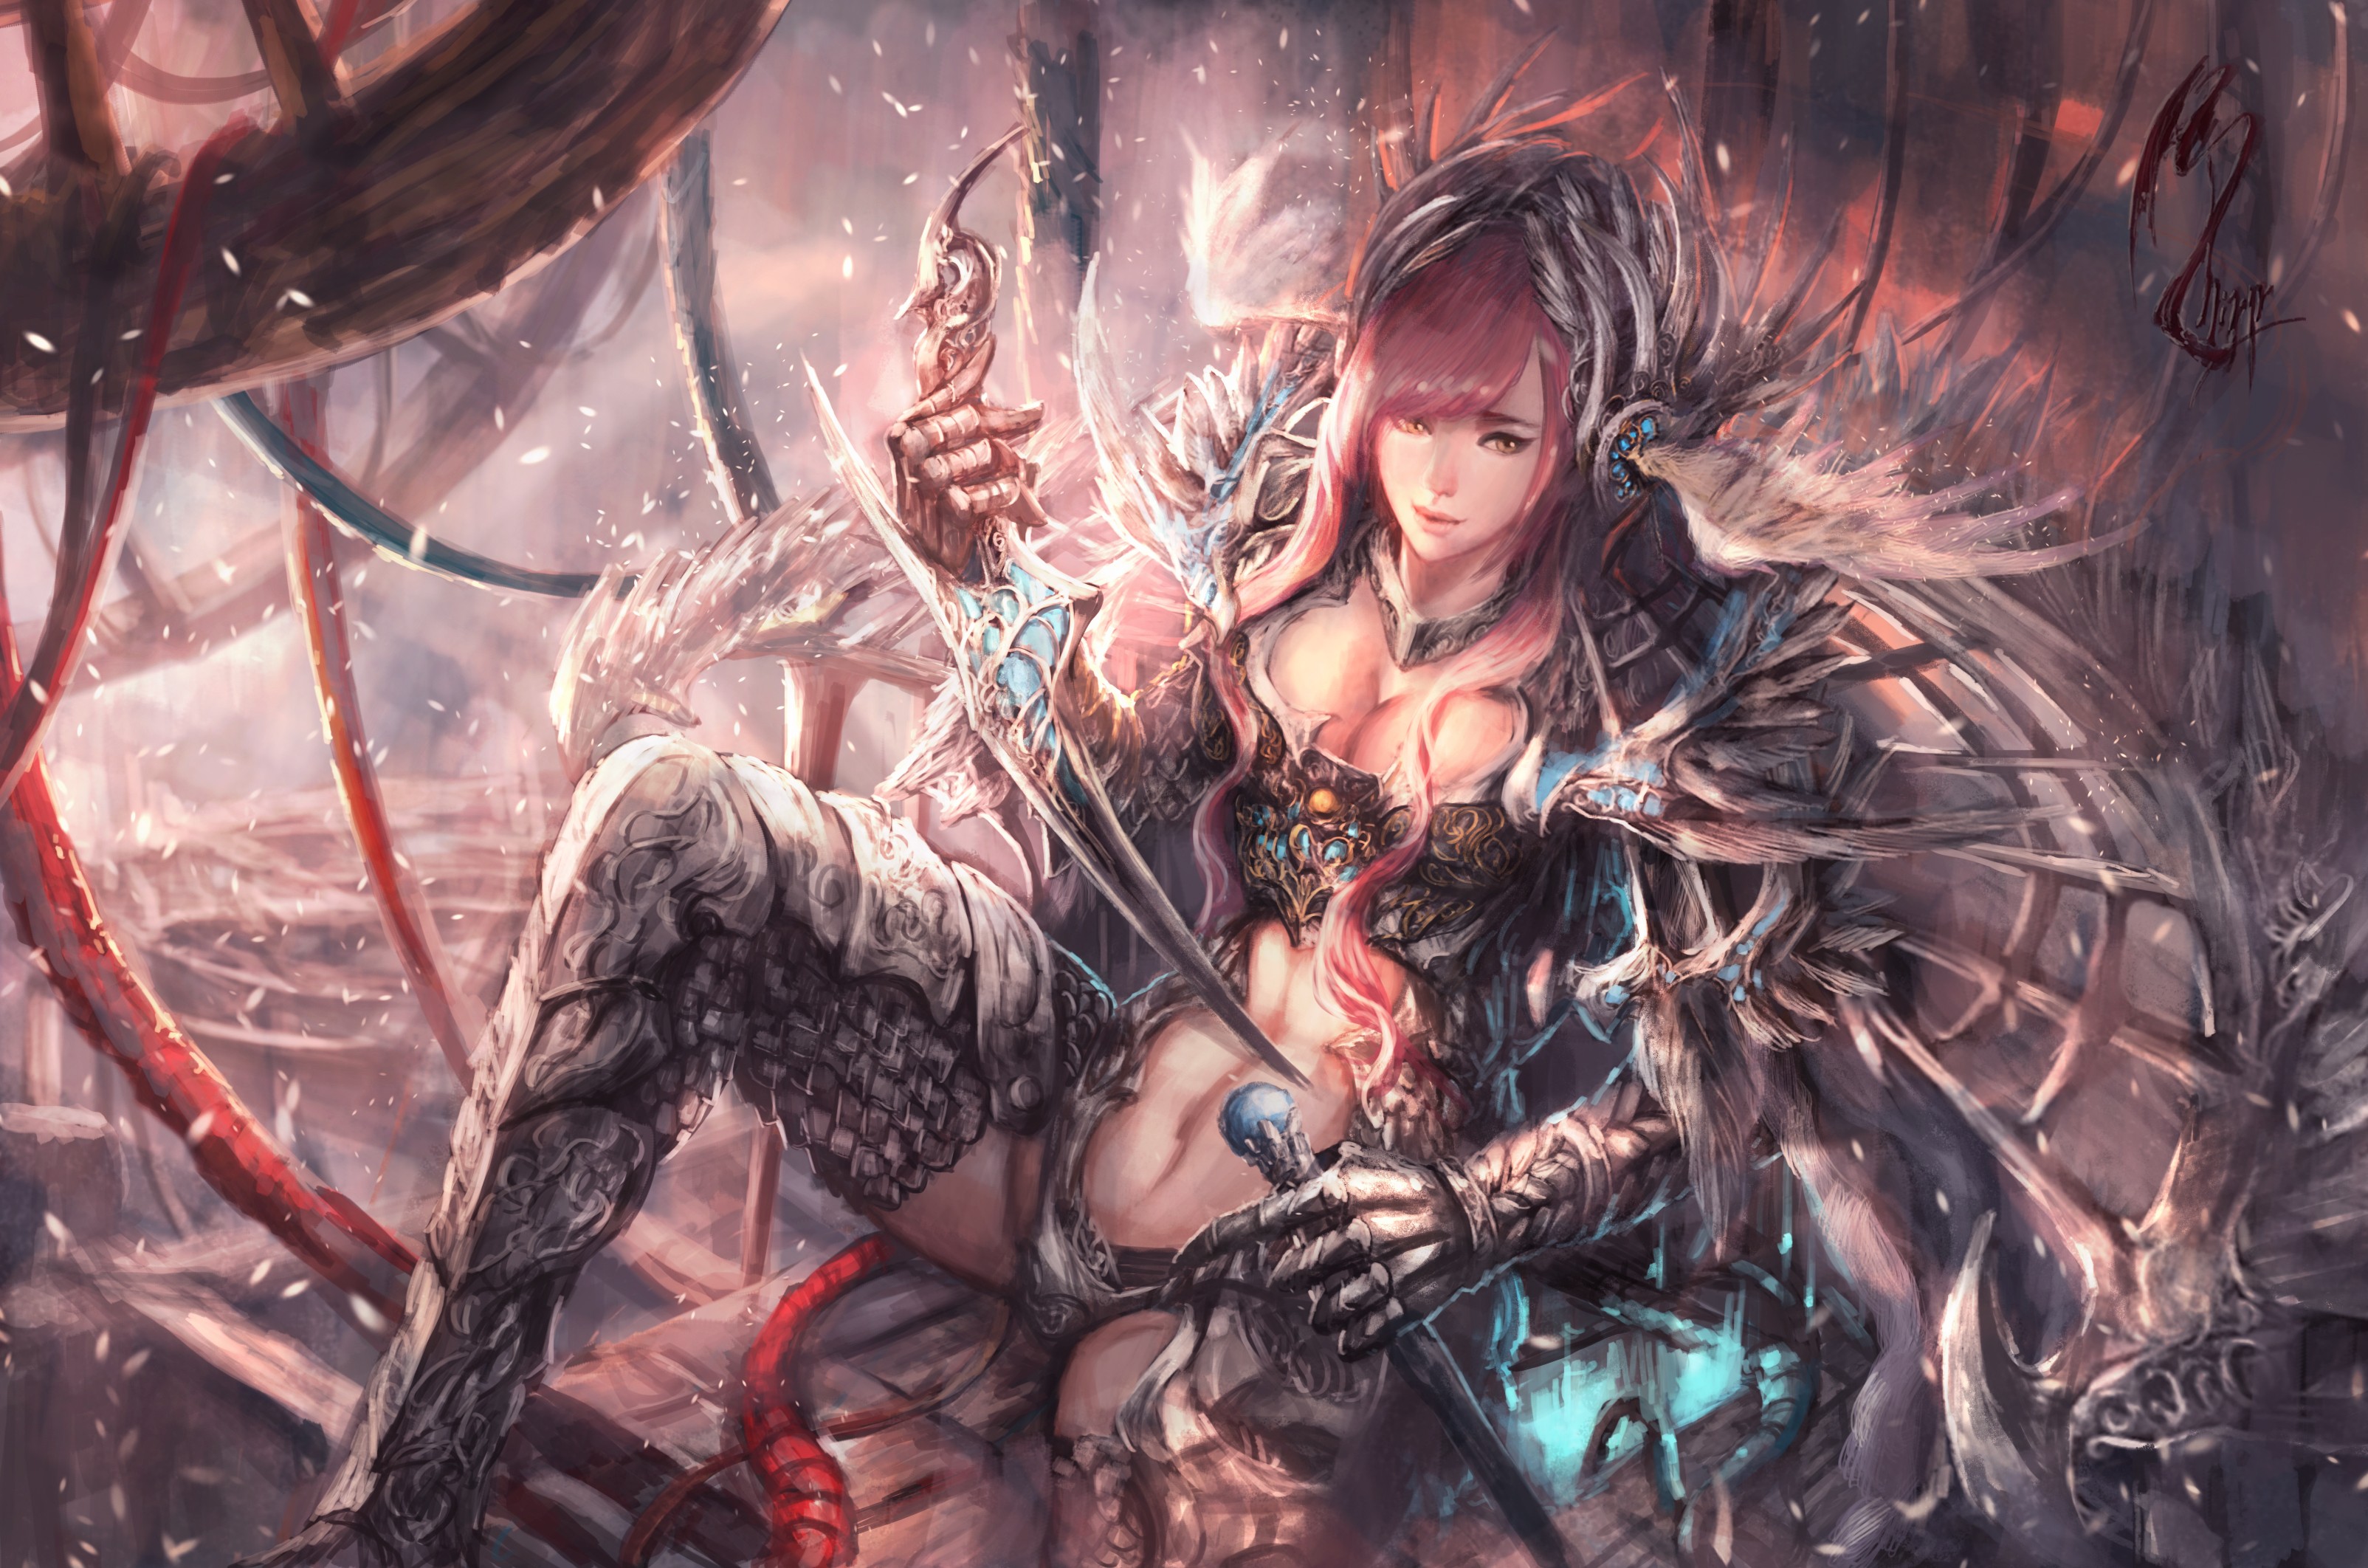 Anime 3208x2124 fantasy art pink hair dagger belly boobs fantasy armor armor fantasy girl women